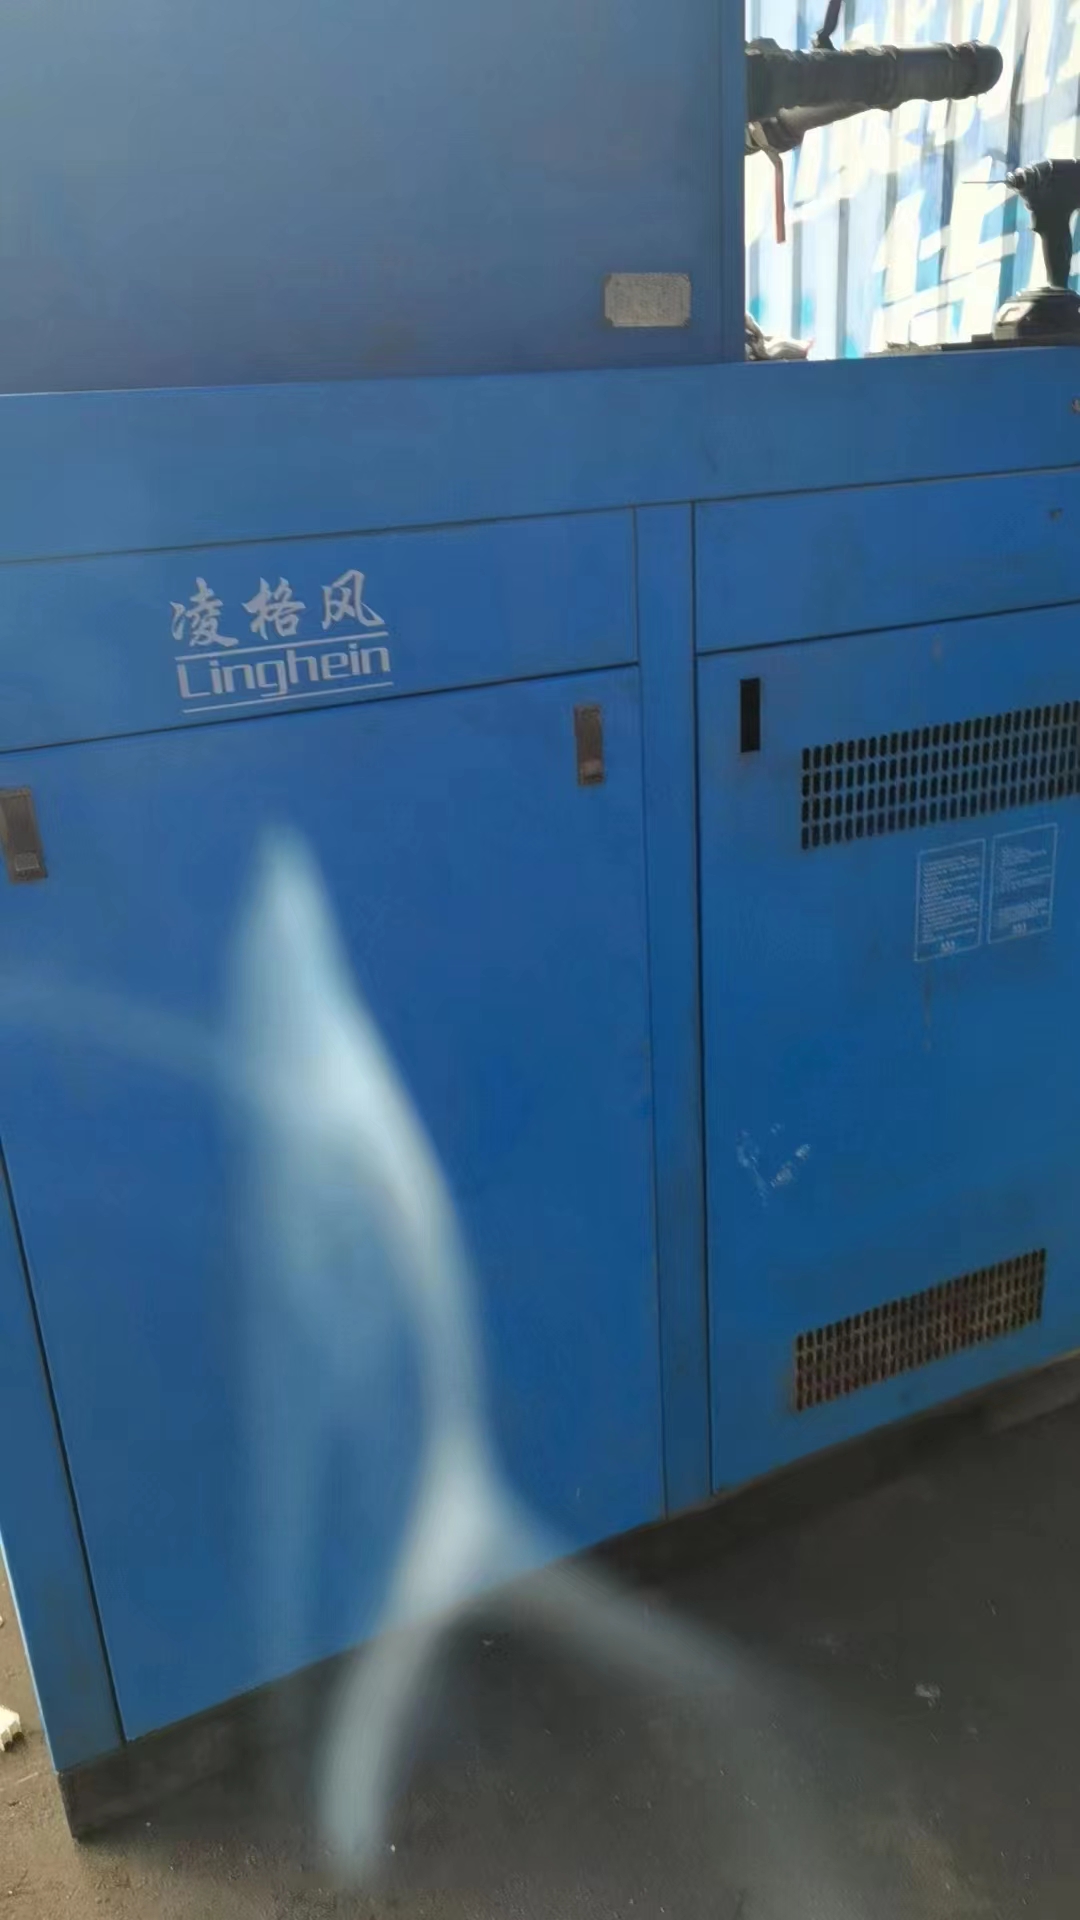 深圳市回收冷冻式压缩空气干燥机厂家深圳哪里有回收冷冻式压缩空气干燥机厂家、回收价格、上门回收厂家、批发热线、回收厂家哪个好